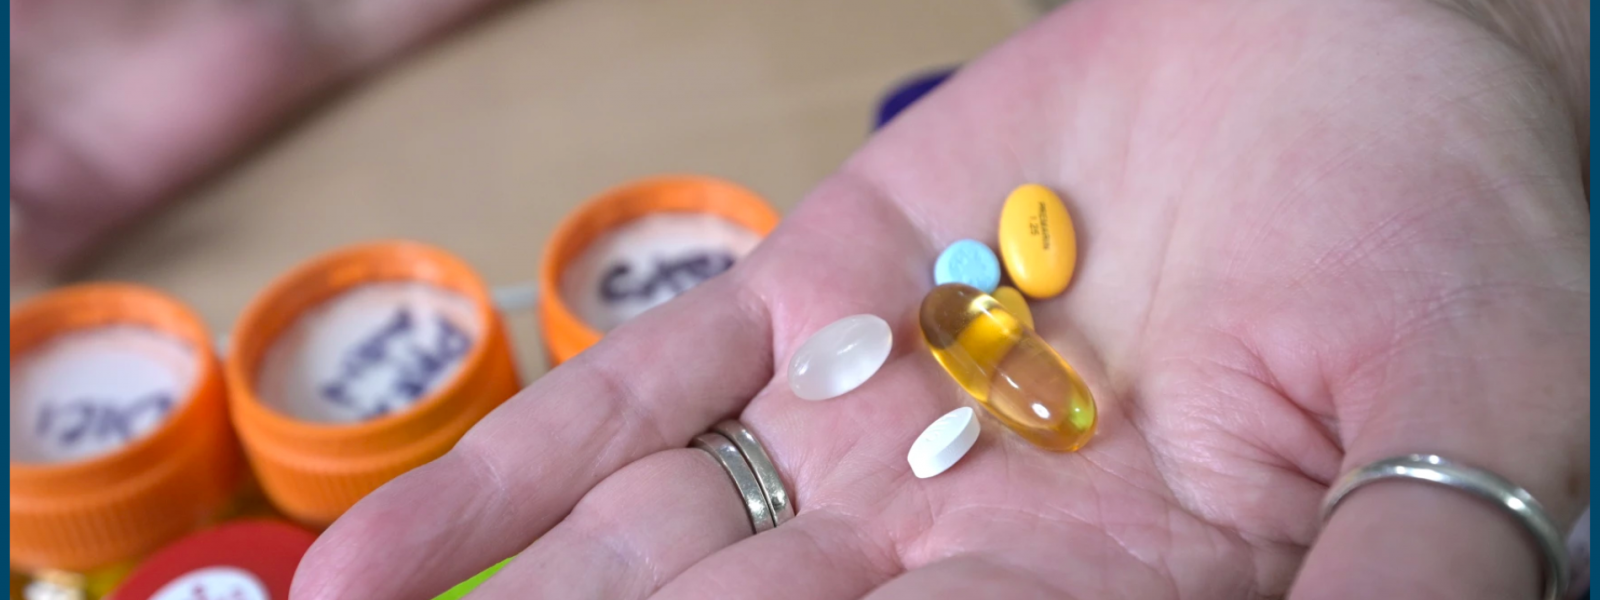 pills in an open hand